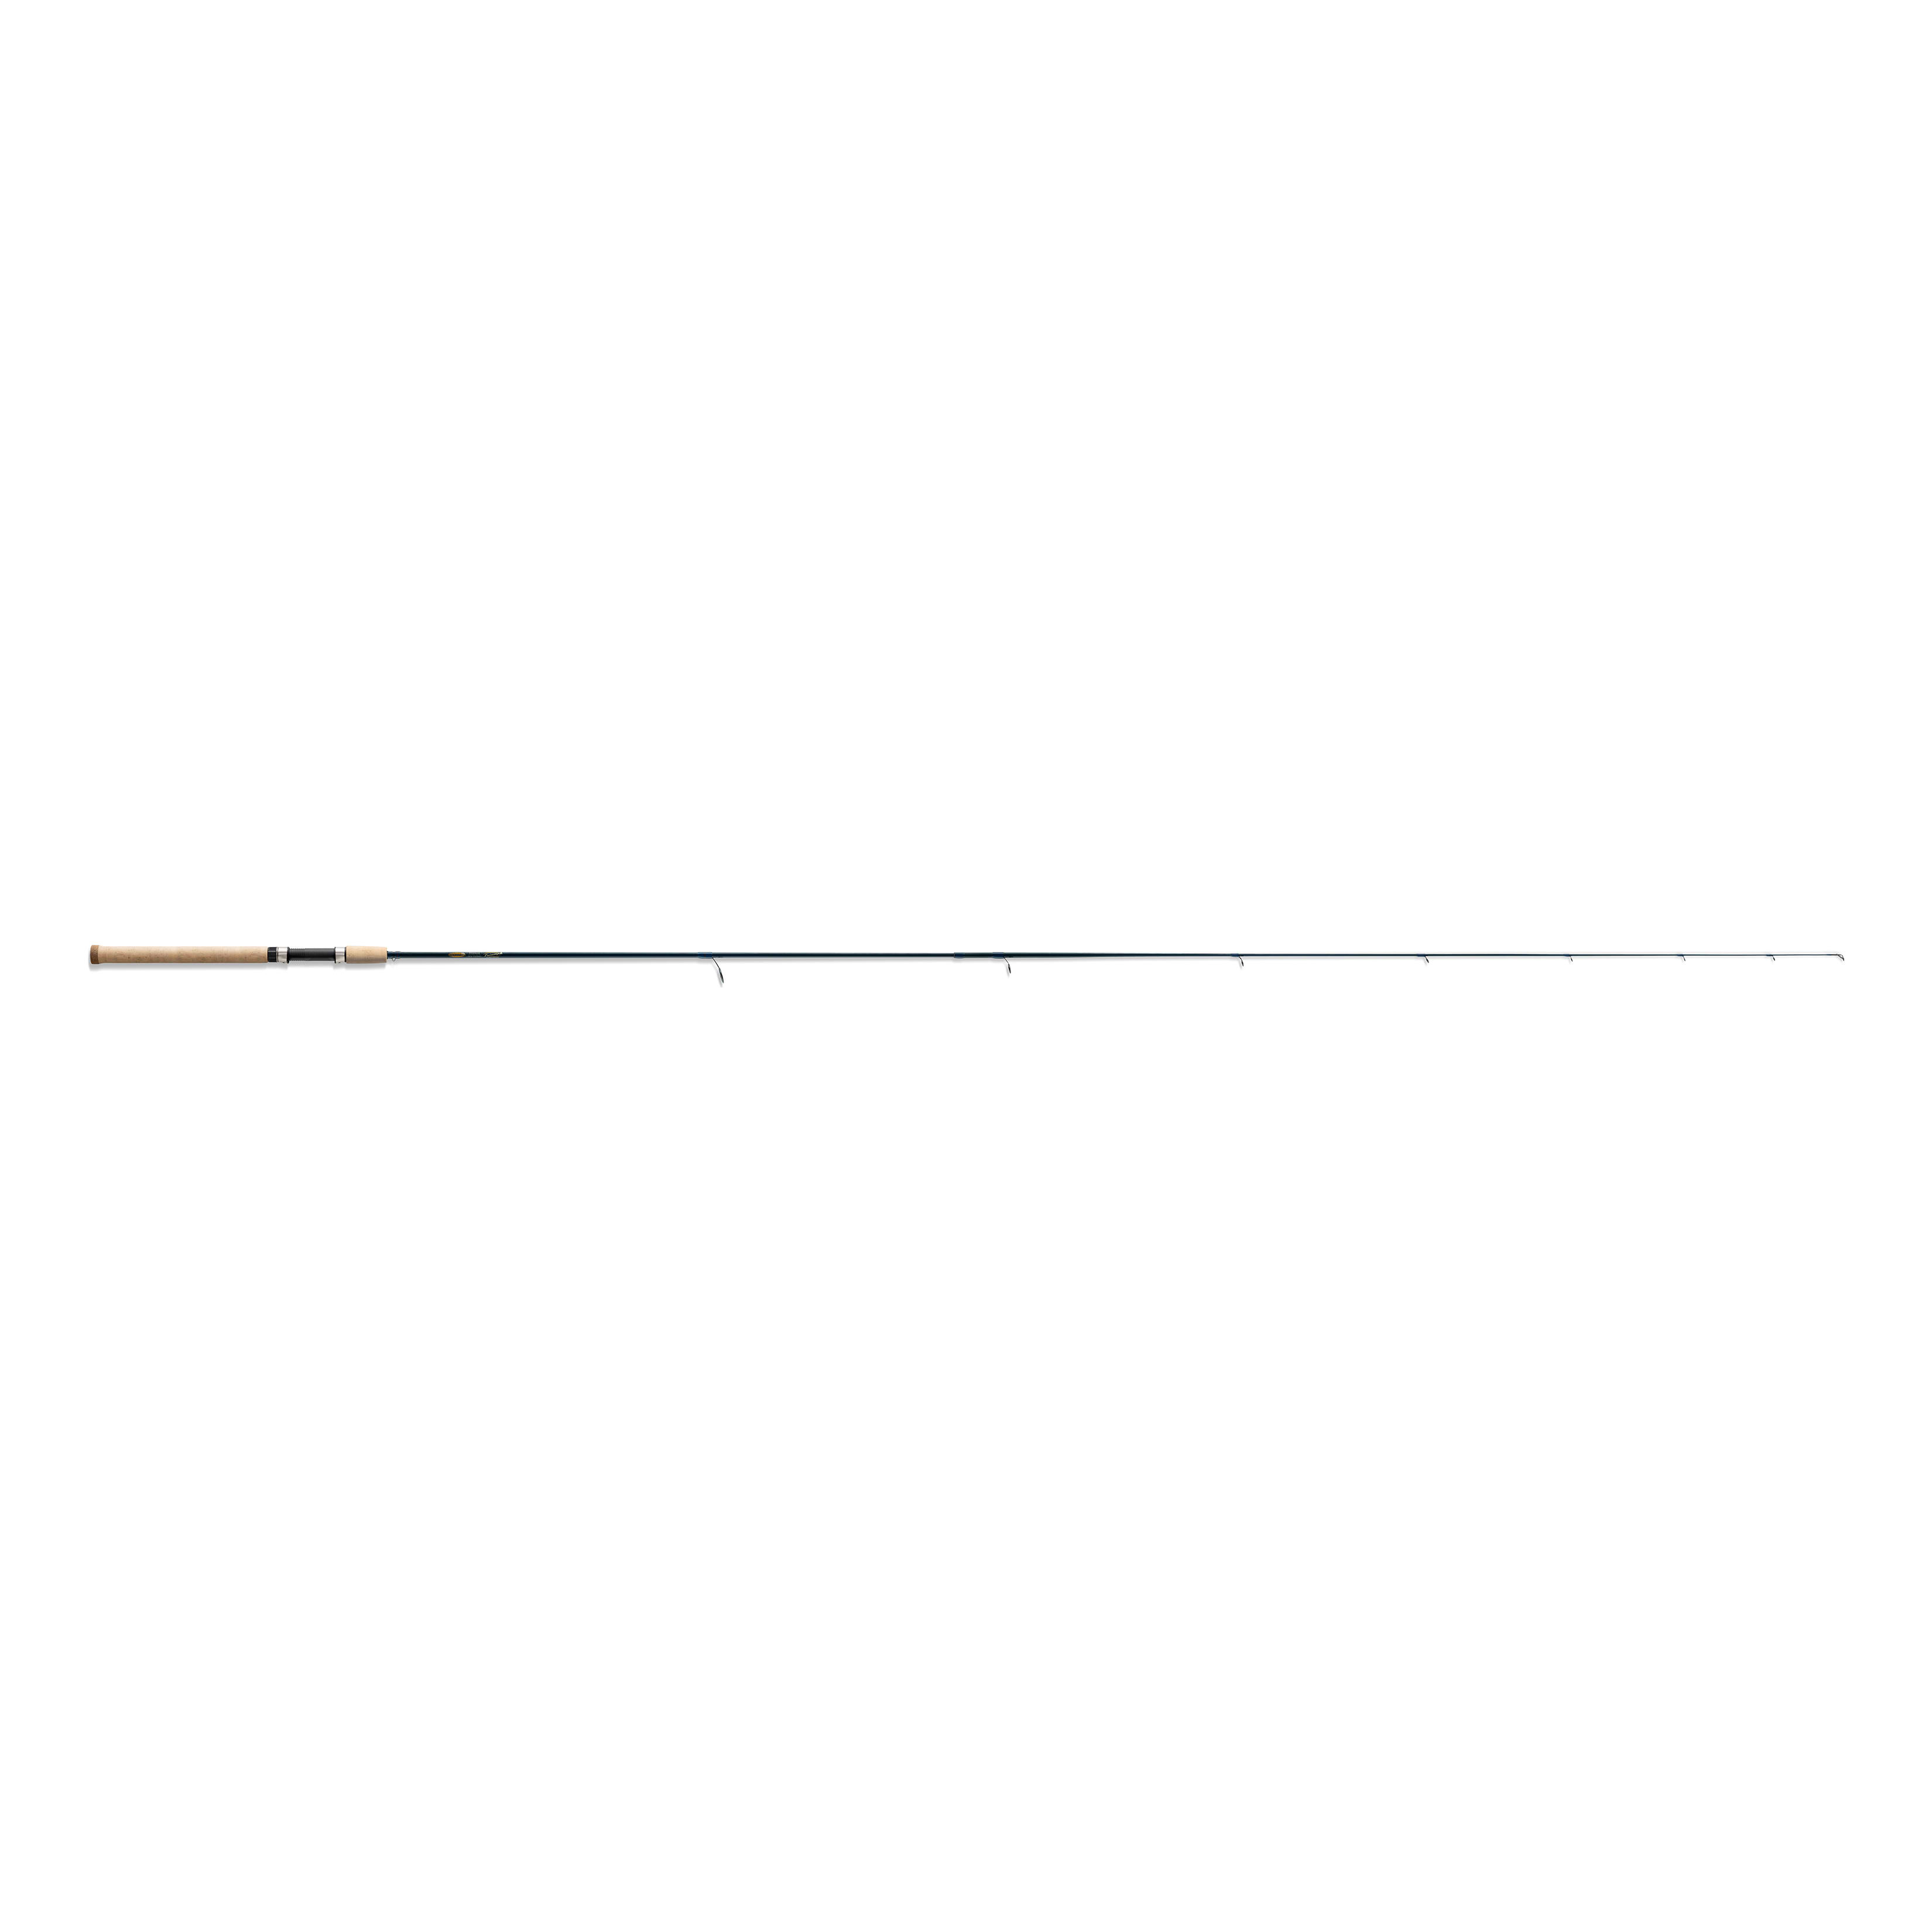  Customer reviews: Berkley BSLR662MLCBO Lightning Rod